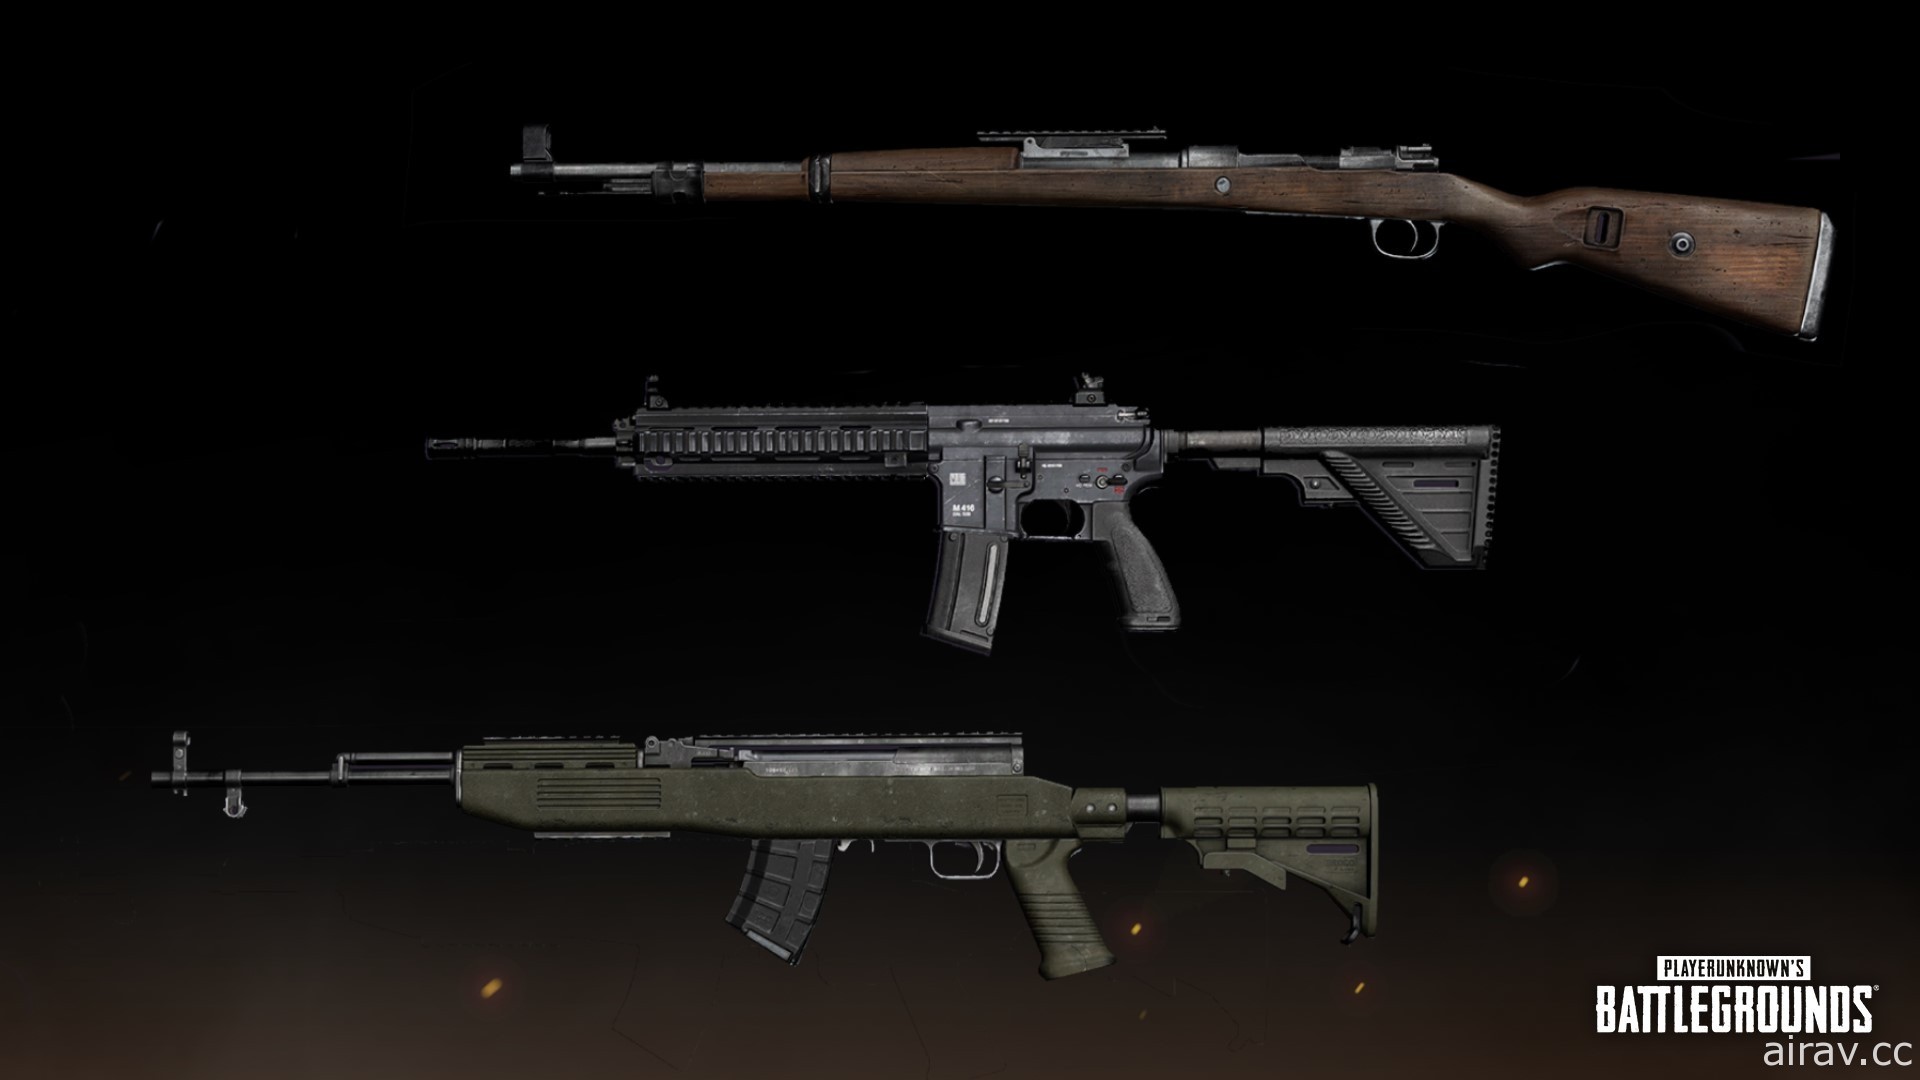 《絕地求生》公布 8.2 更新資訊 將加入 MG3 機關槍、戰術道具誘餌手榴彈等